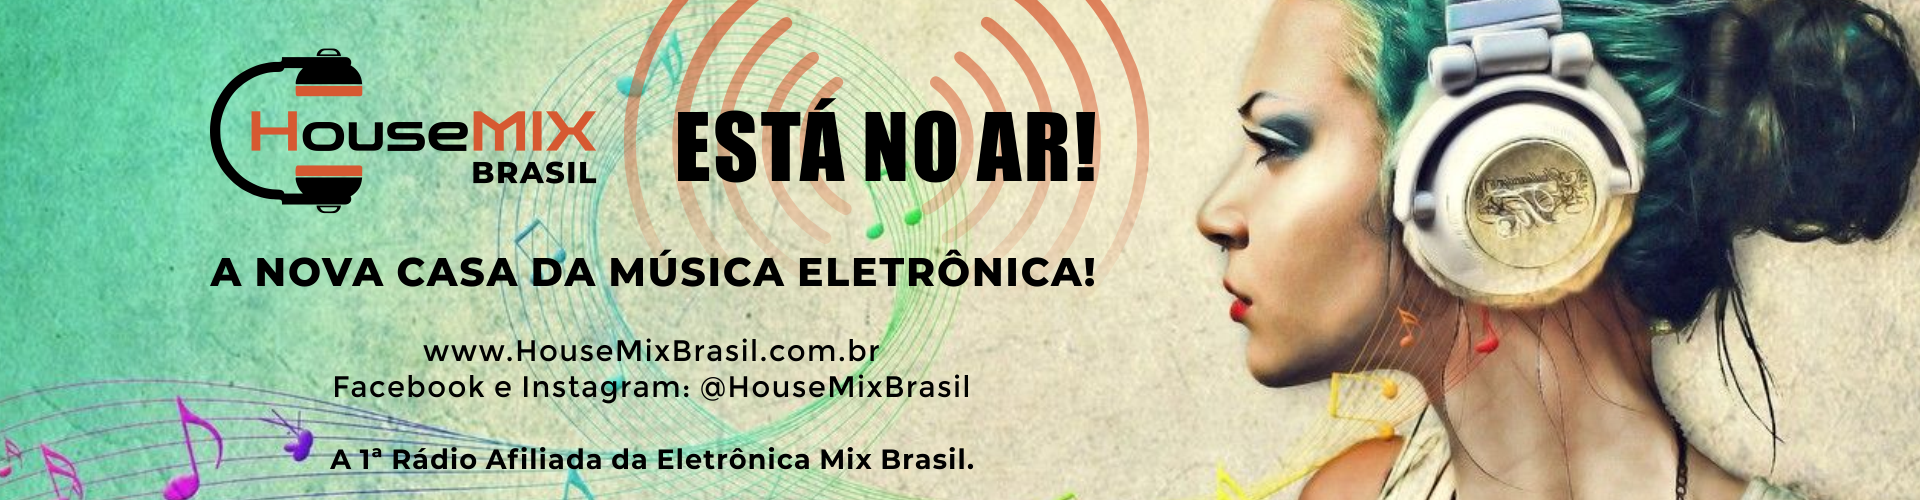 House Mix Brasil está no ar! aaa